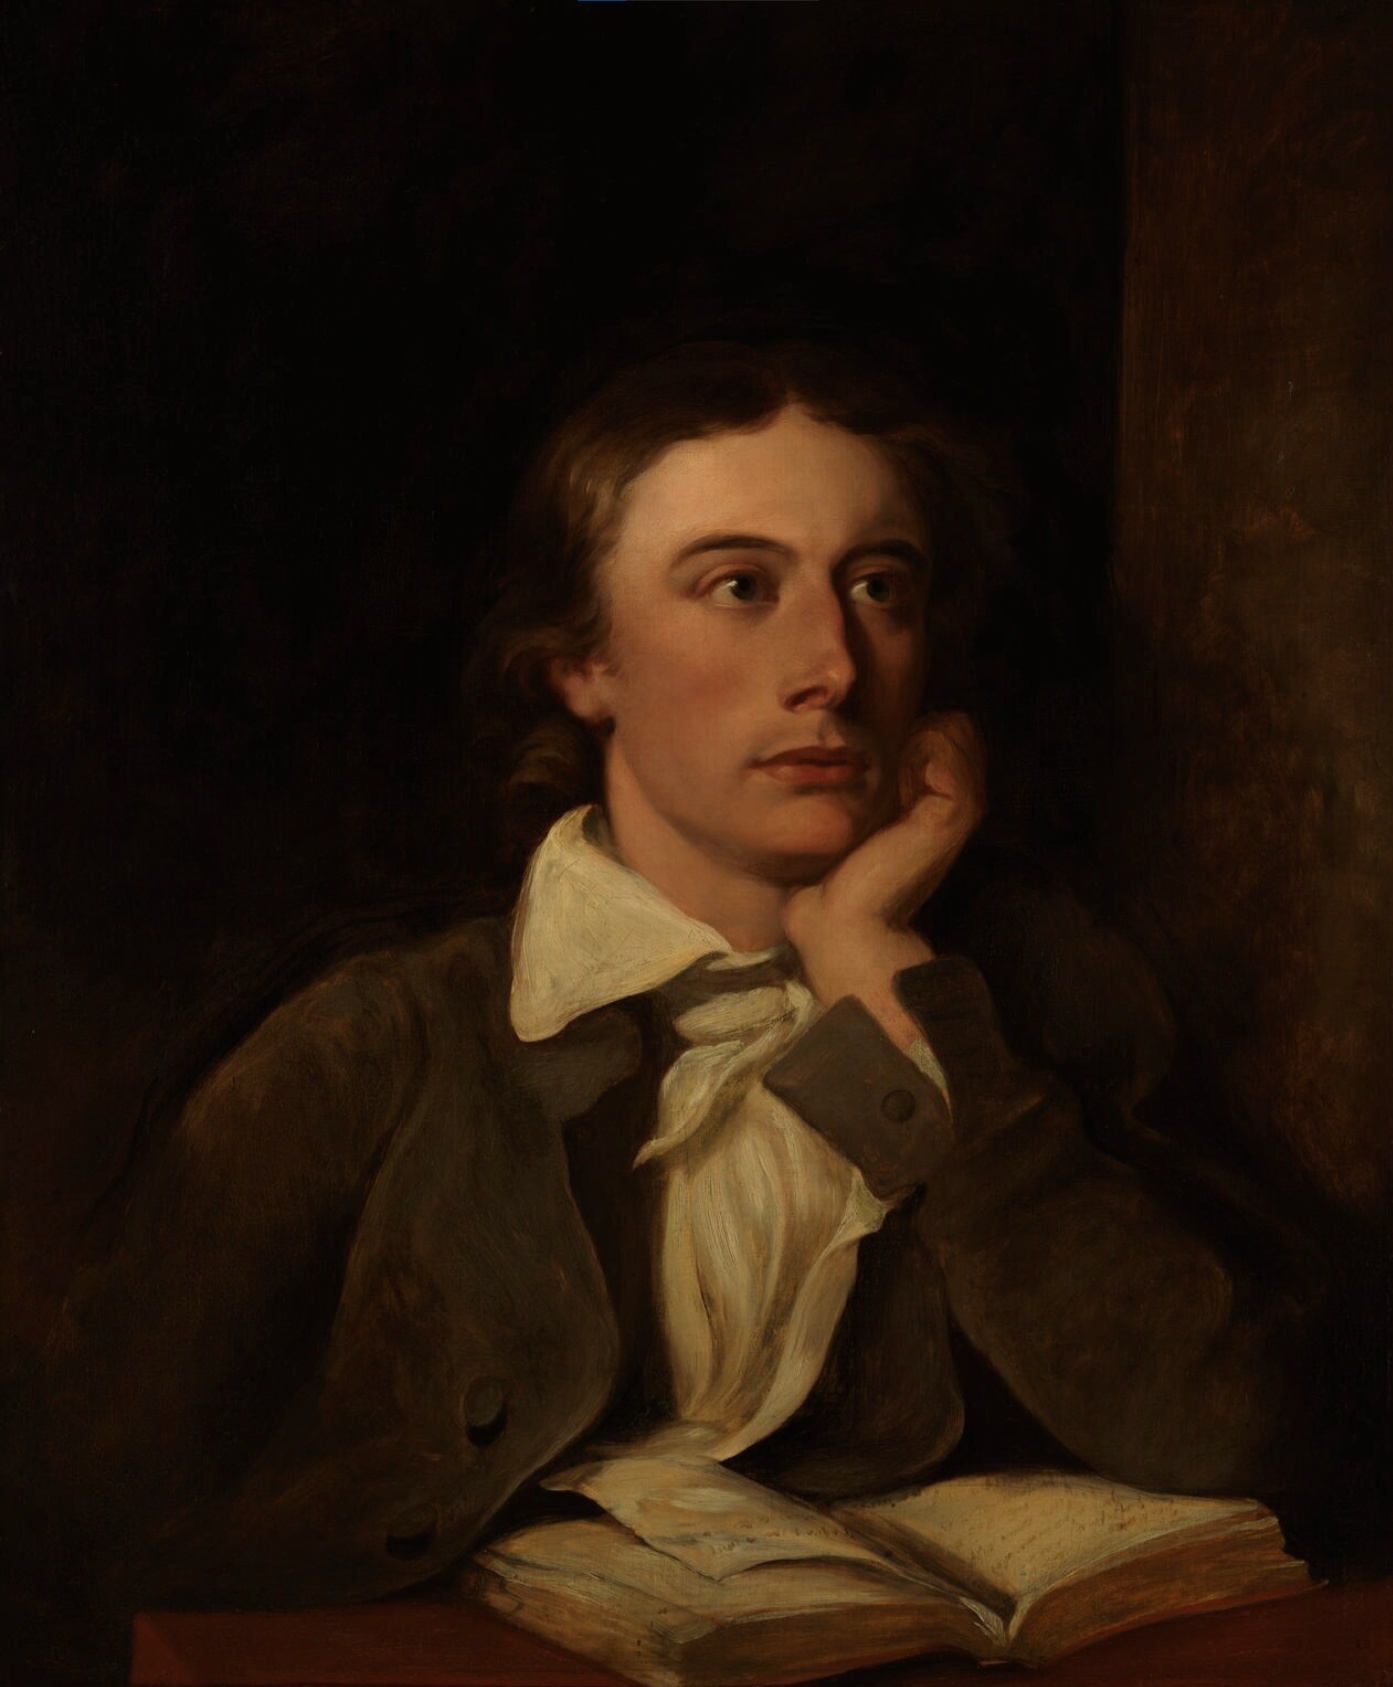 auteur John Keats